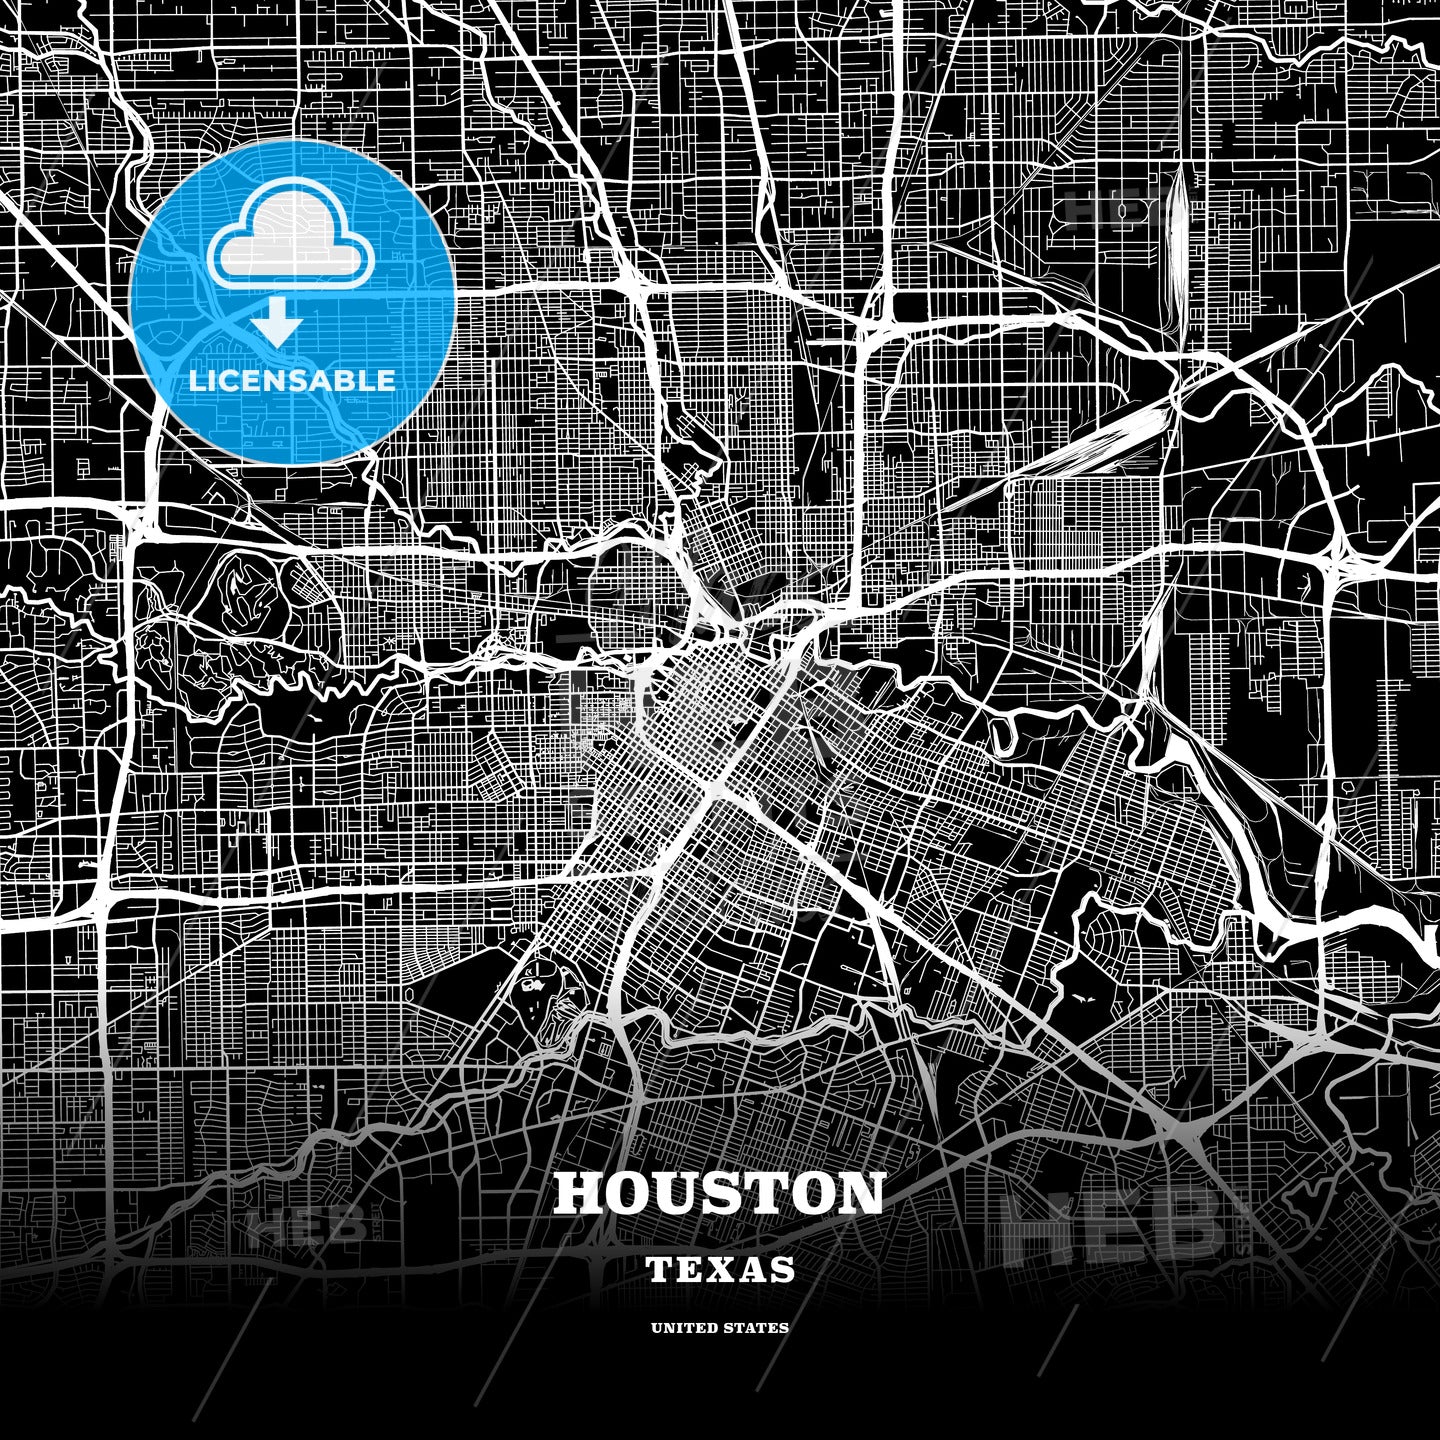 Houston, Texas, USA map